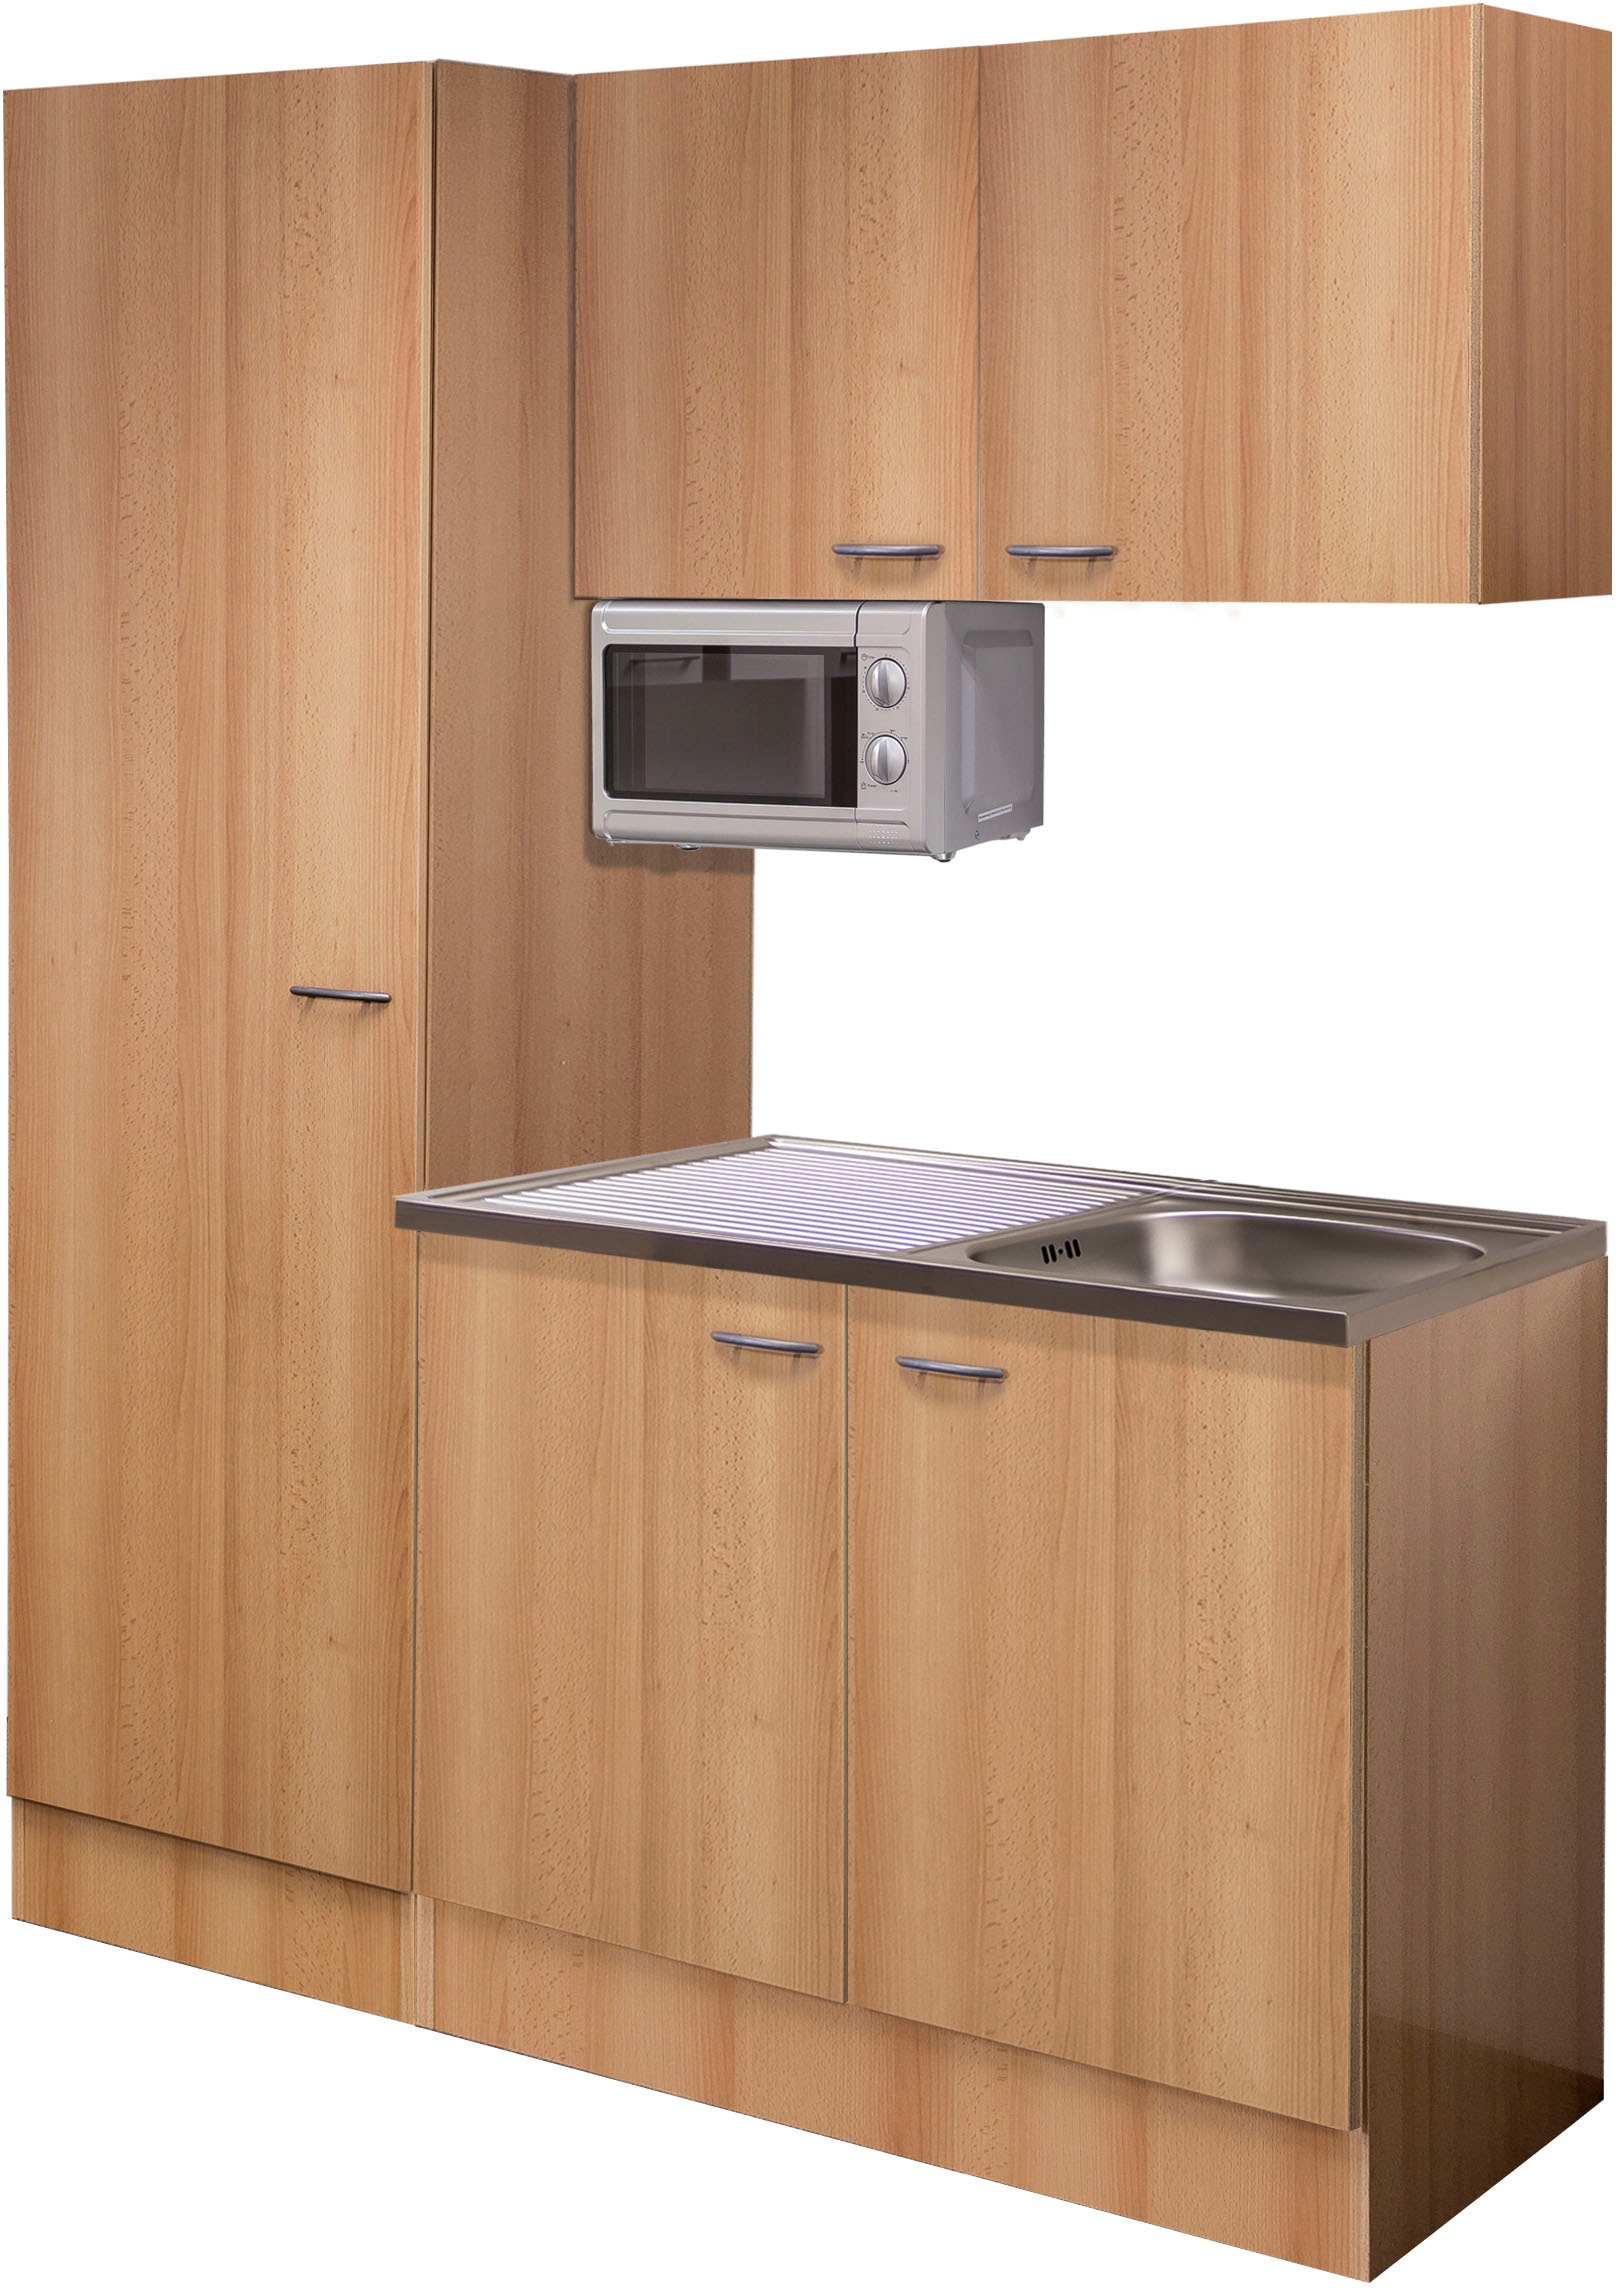 Flex-Well Küche »Nano«, Gesamtbreite 150 cm, mit großem Vorratsschrank und Mikrowelle etc.